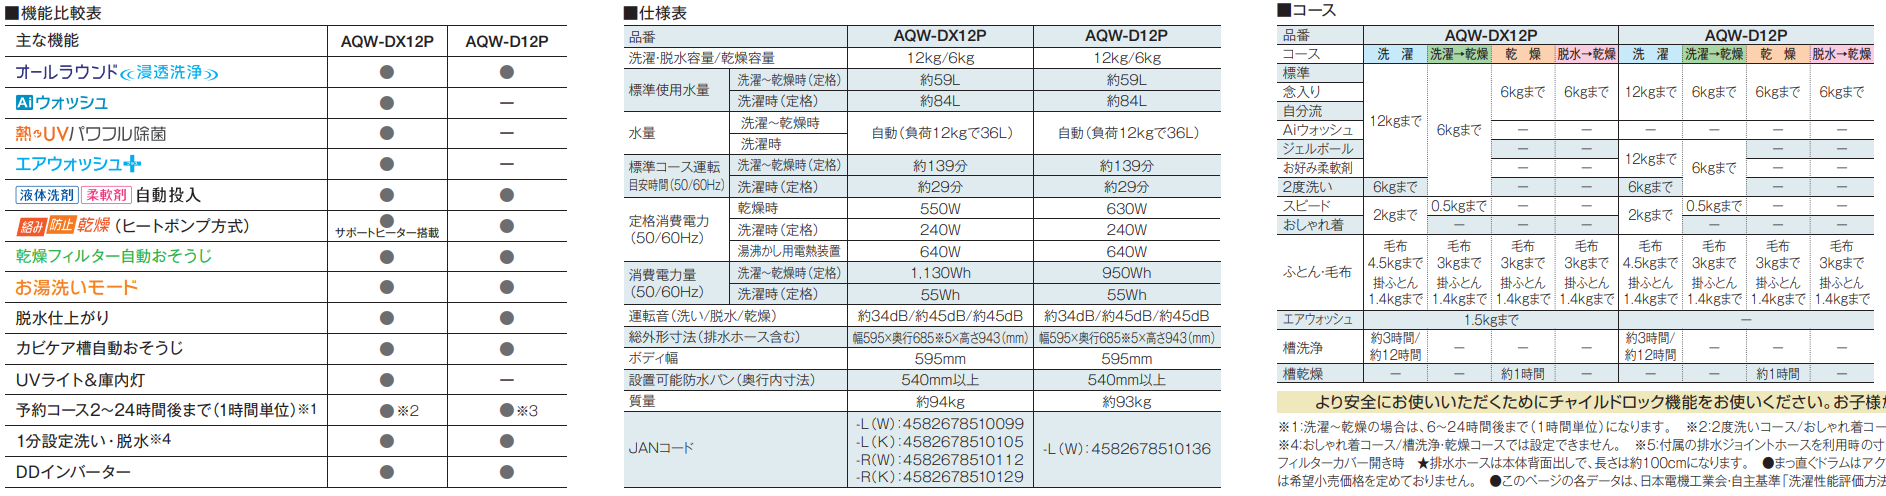 【鬼比較】AQW-DX12P-RとAQW-DX12N 新旧3台違い口コミ レビュー!